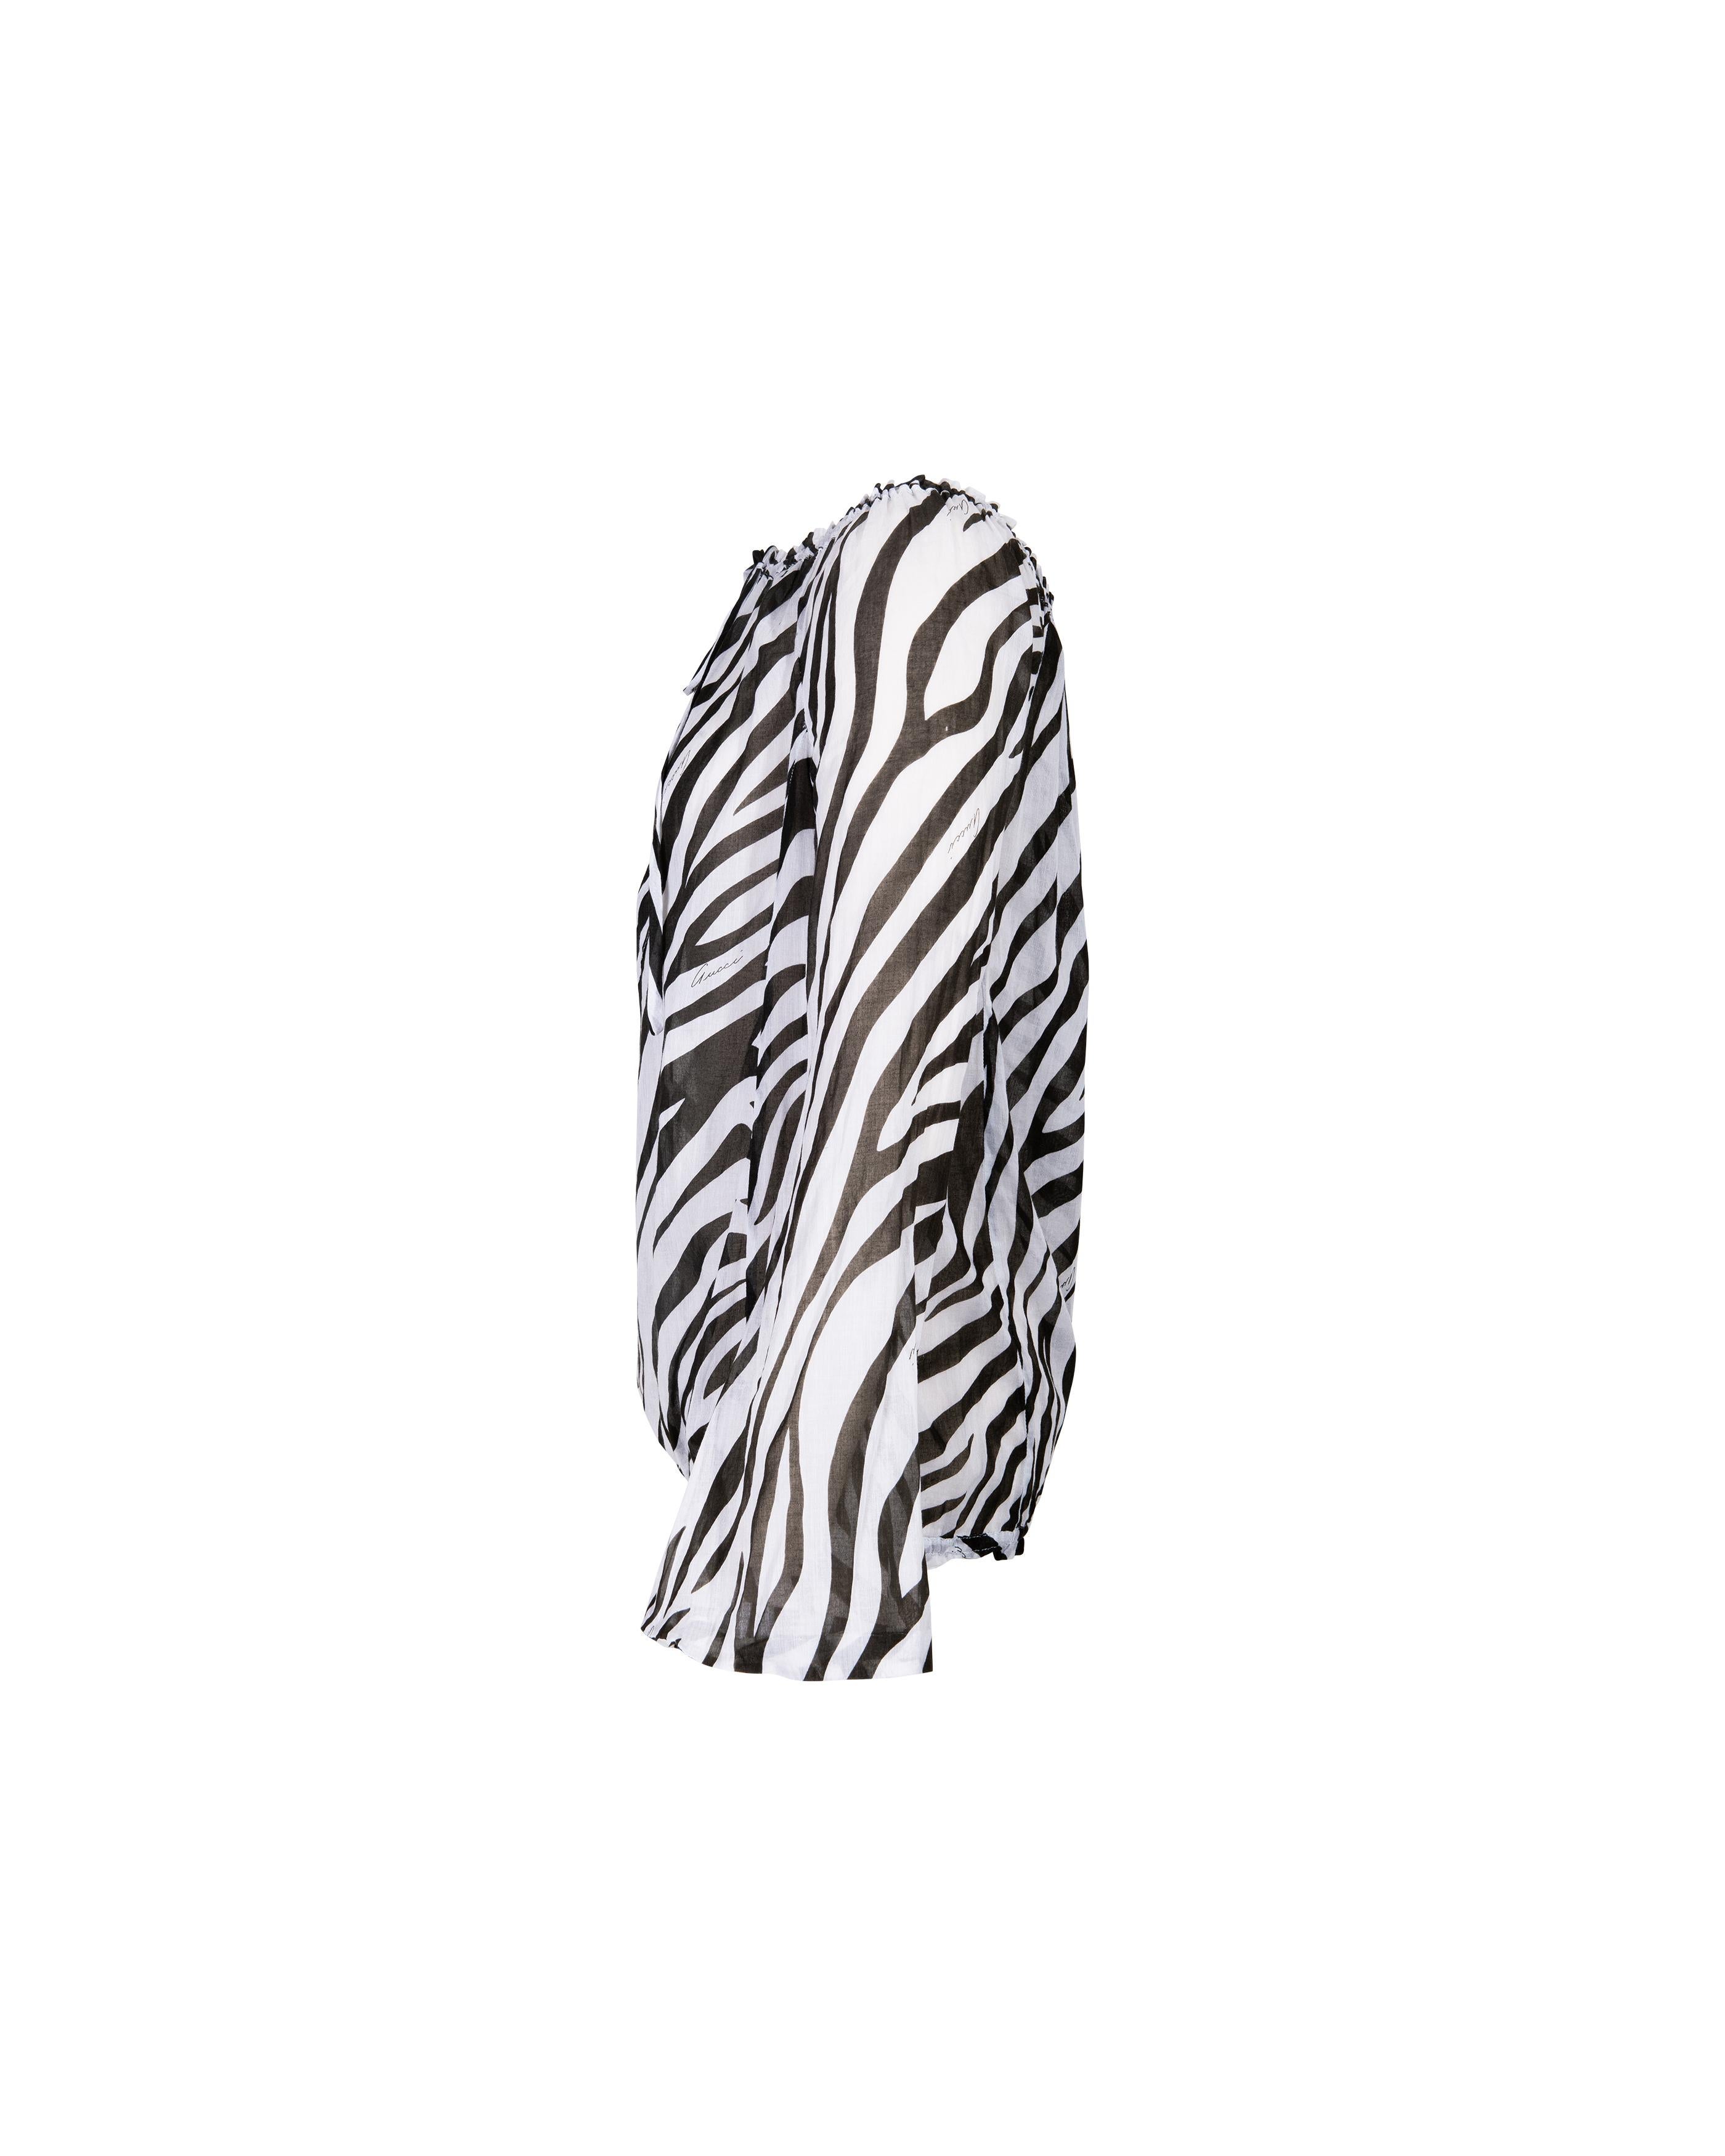 F/S 1996 Gucci by Tom Ford Schwarze und weiße Baumwollbluse mit Zebradruck Damen